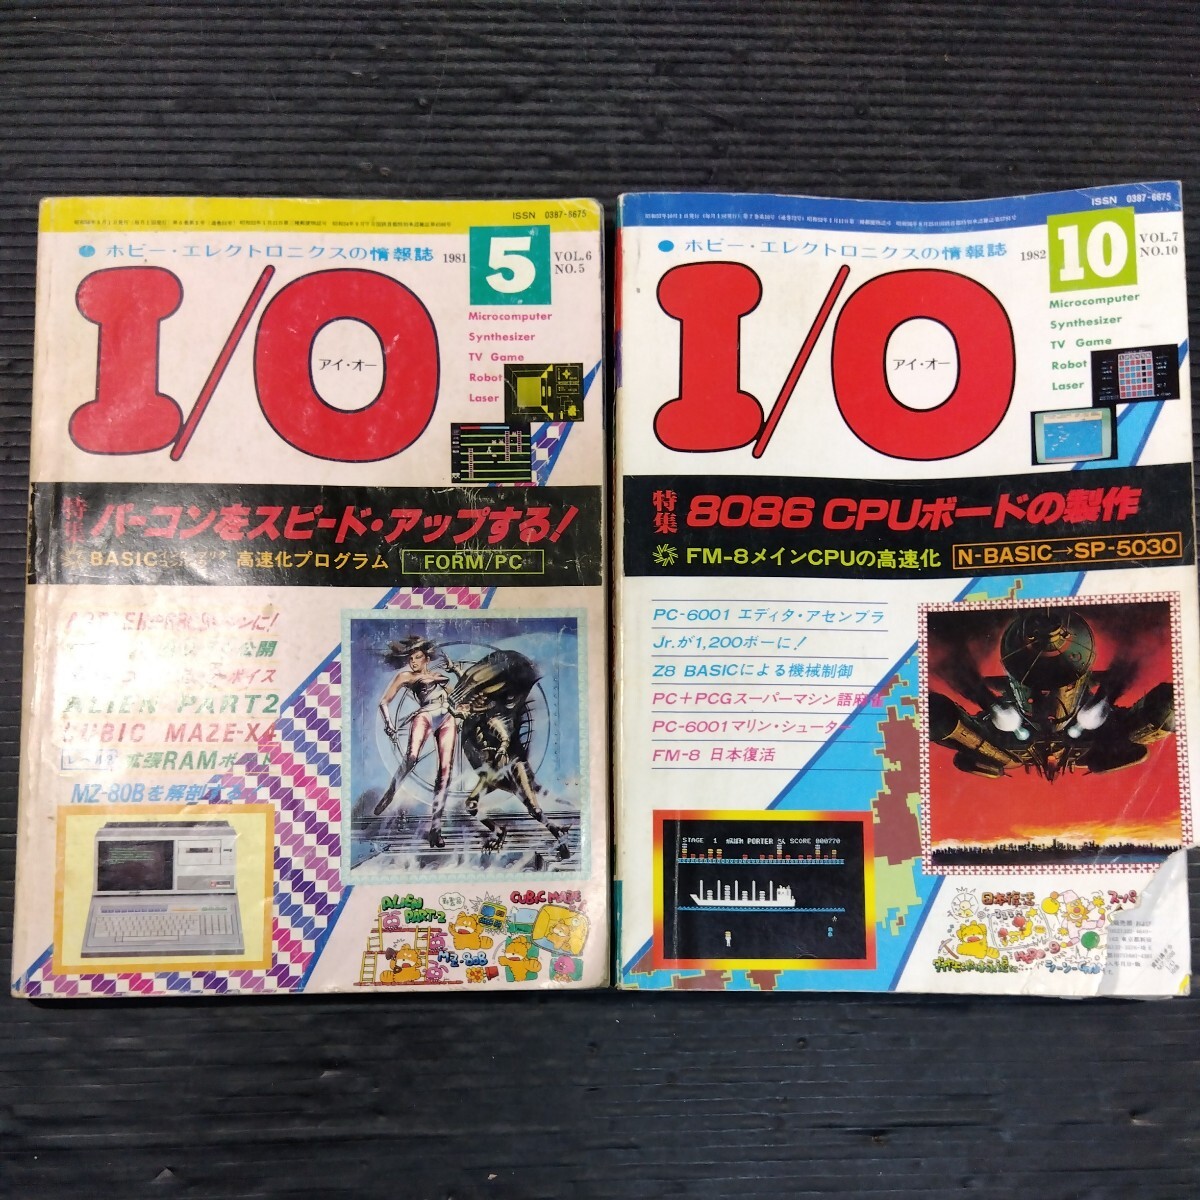 PC雑誌 I/O アイ・オー 2冊セット 1981年5月号 1982年10月号 不揃い 工学社 16ビット マイコン プチコン パーコン パソコンゲーム_画像1